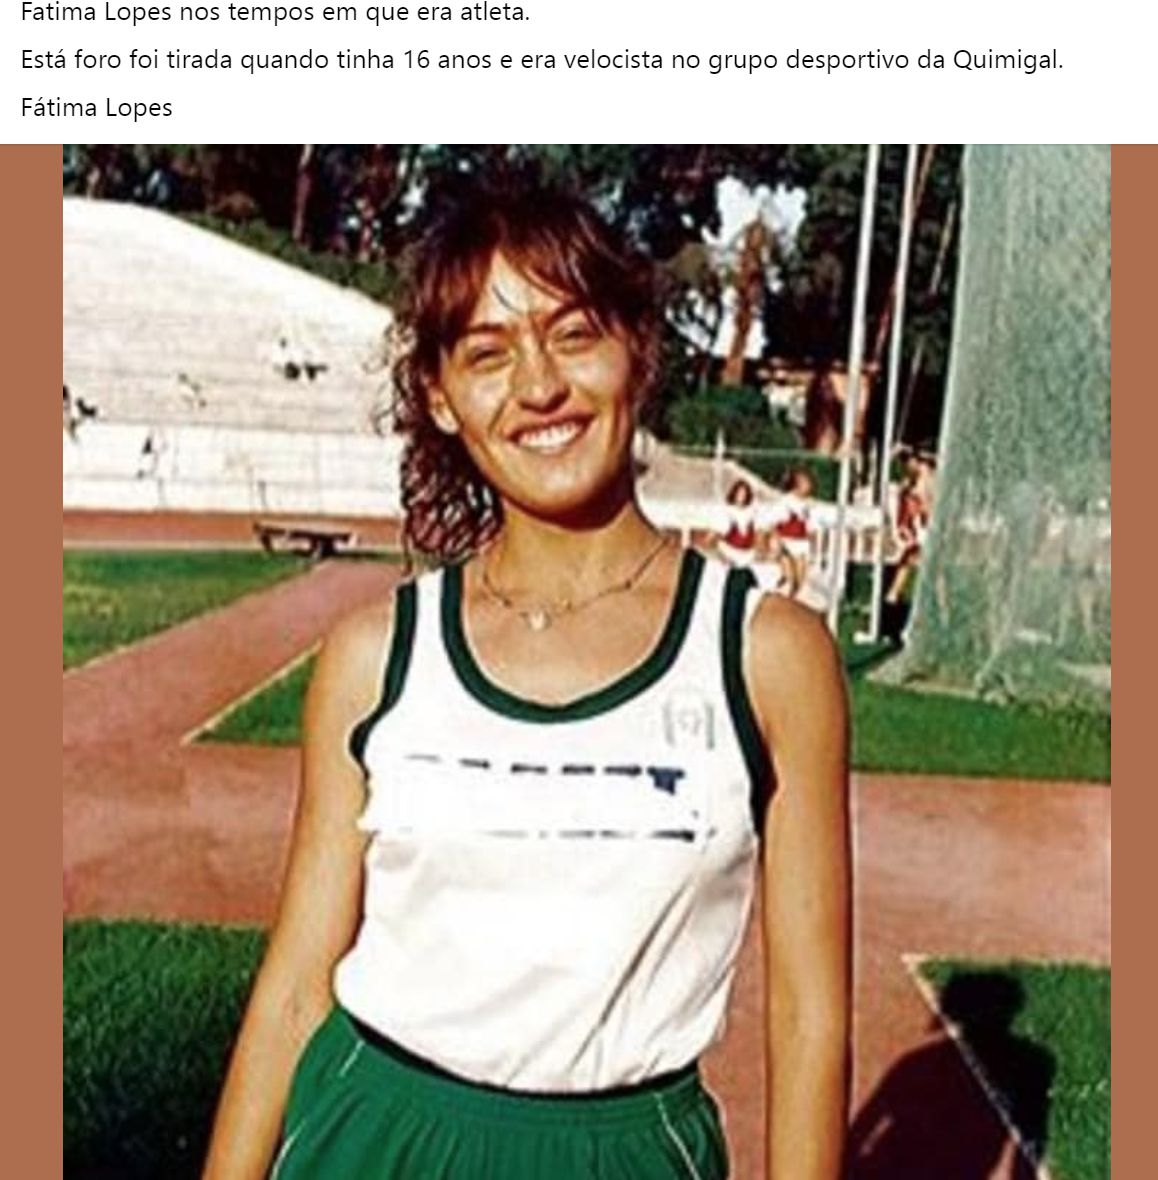 Fátima Lopes &#8220;apanhada&#8221; em &#8220;tesourinho&#8221; com 16 anos de idade: &#8220;Quando era atleta&#8230;&#8221;